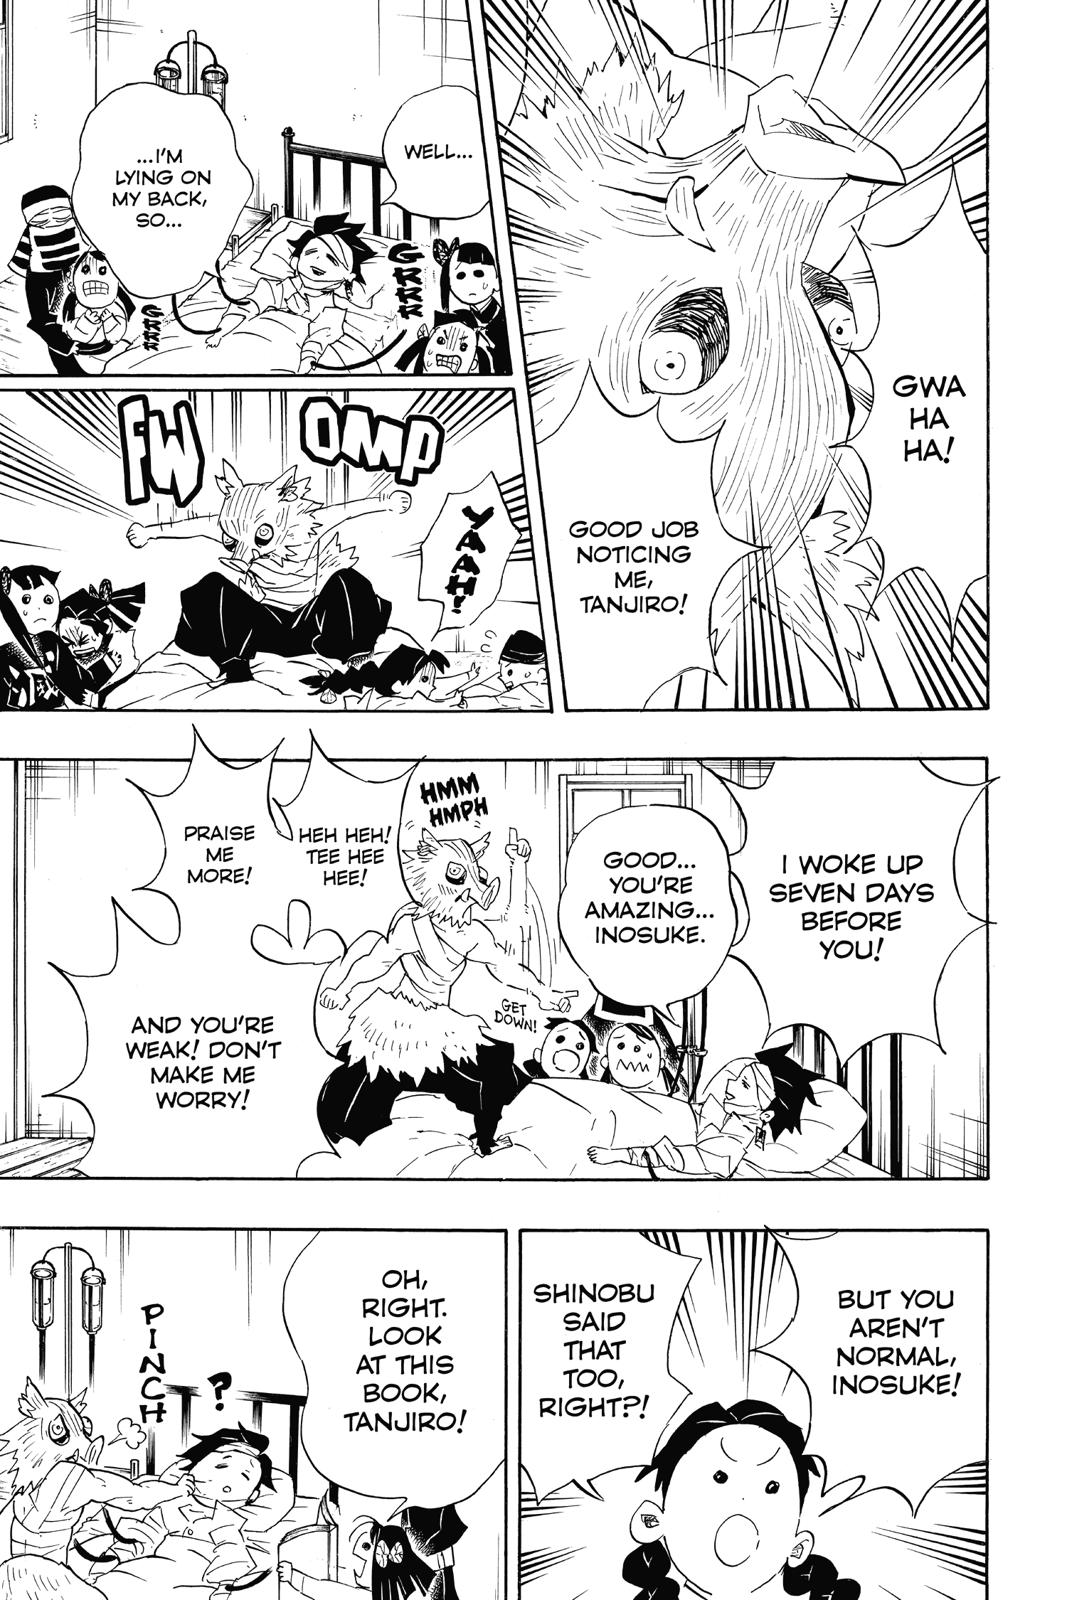 Demon Slayer Manga Manga Chapter - 100 - image 9